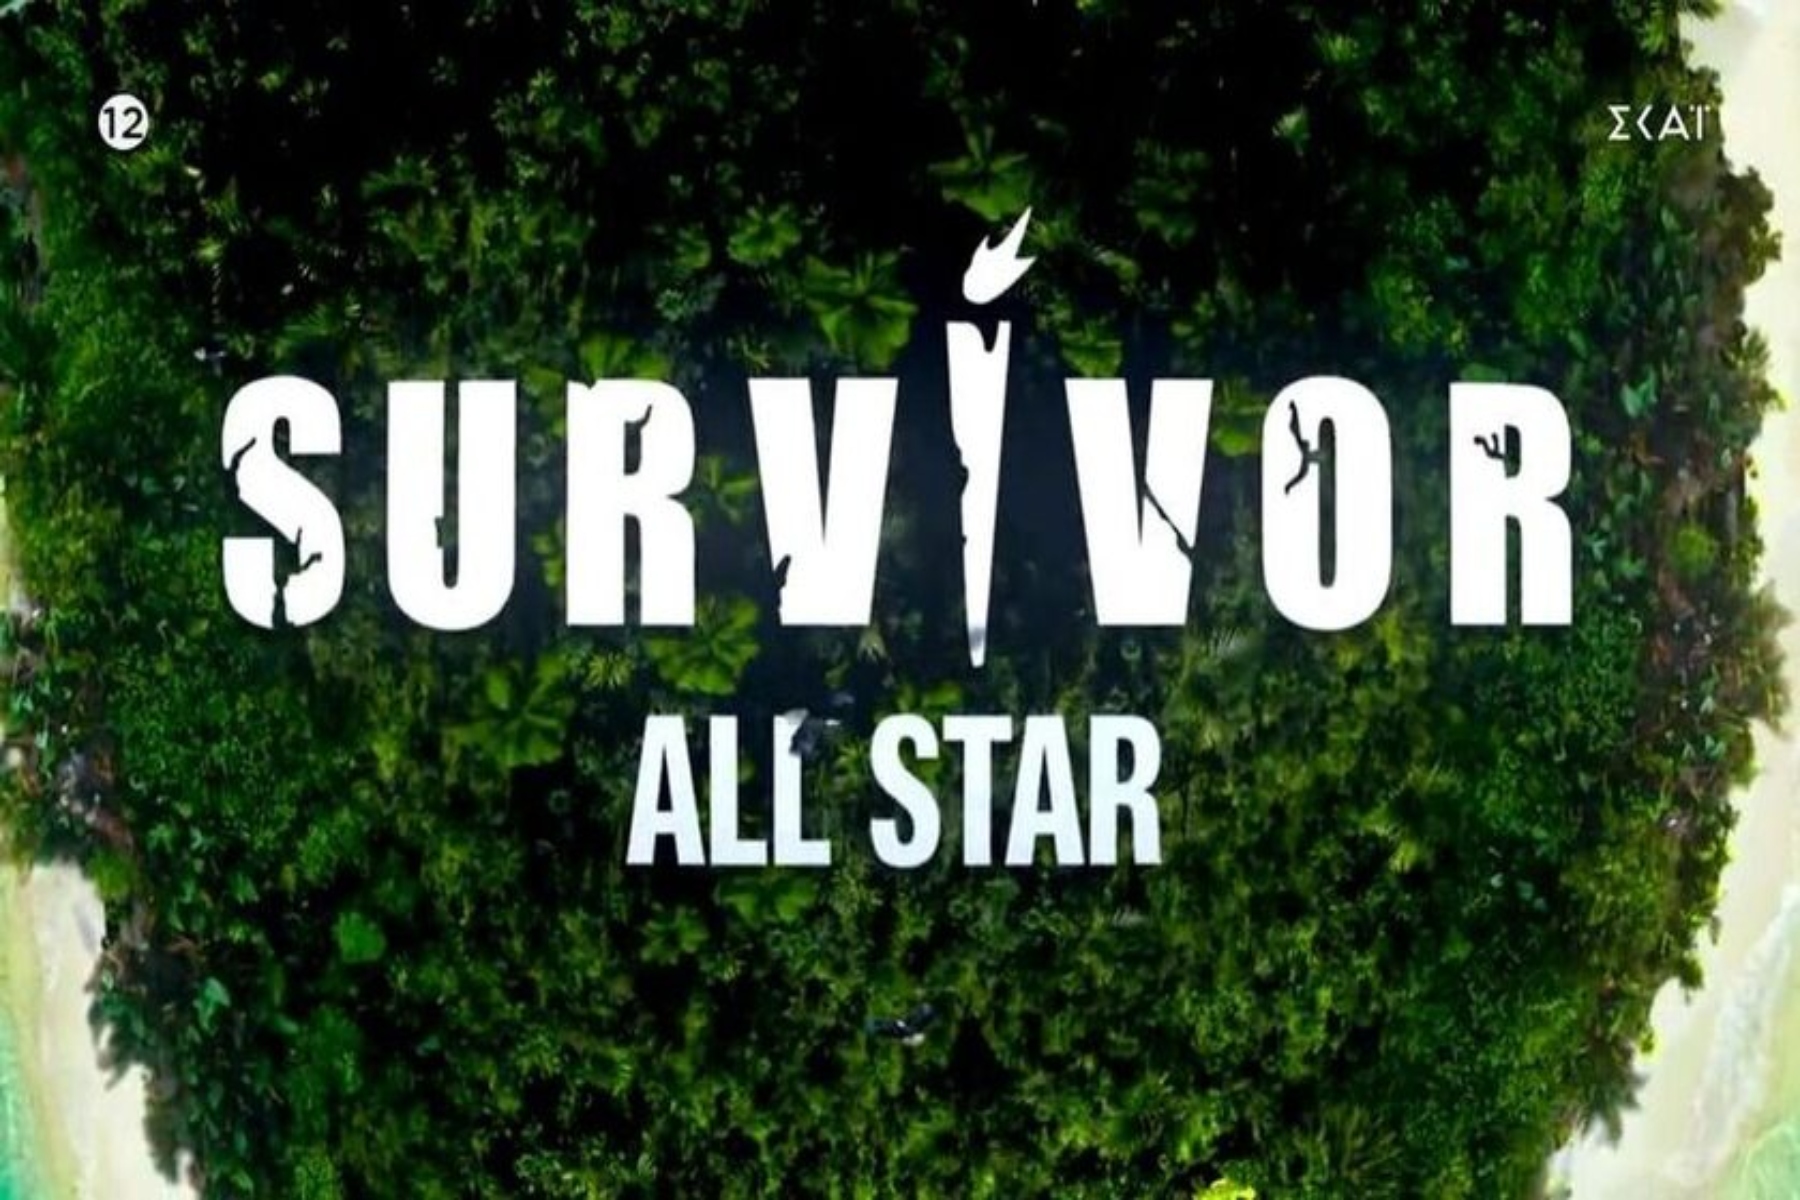 Survivor All Star 22/01: Νέοι παίκτες, η 1η ασυλία και τα “καρφώματα” σε Μάριο & Καρολίνα [trailer]